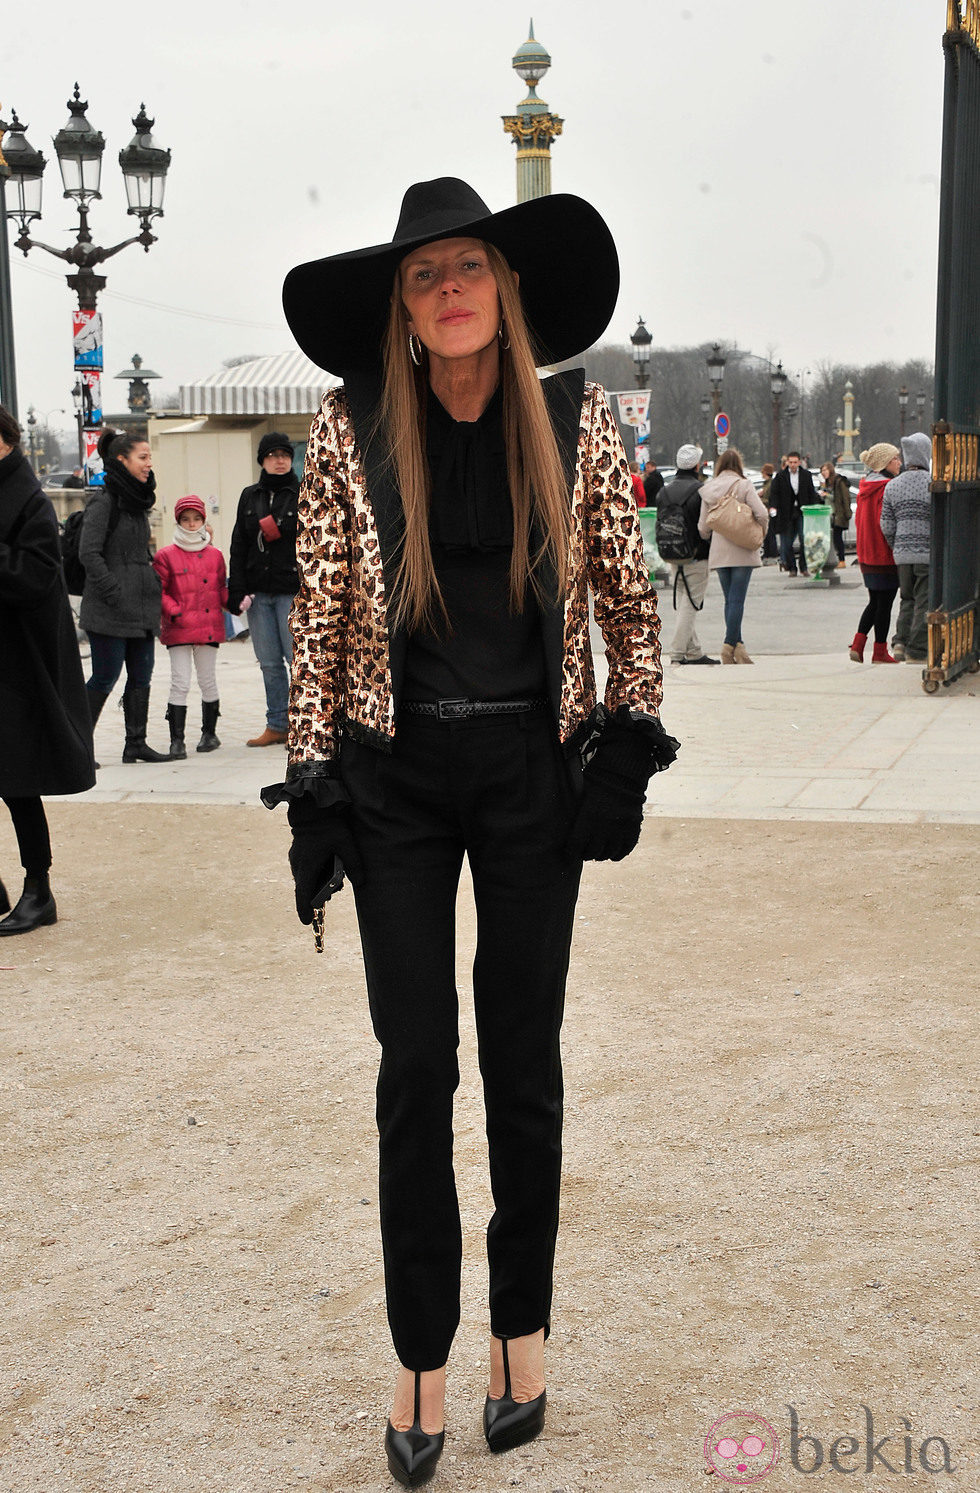 Anna Dello Russo en el desfile de Viktor & Rolf otoño/invierno 2013/2014 en la Semana de la Moda de París